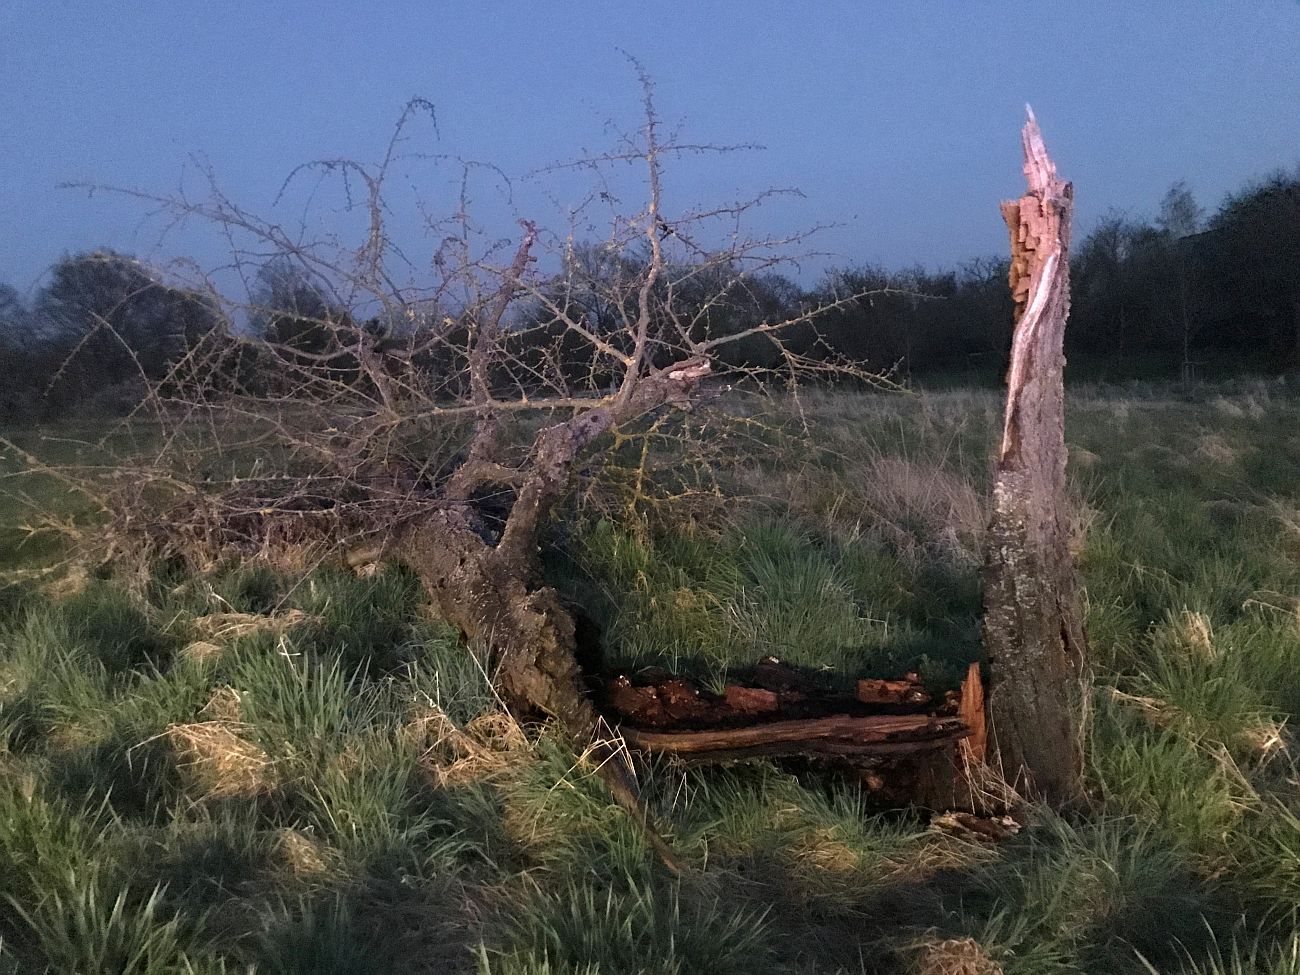 Großes Rätsel: Baum wird Opfer durch mysteriösen Blitzeinschlag Das Holz glühte noch